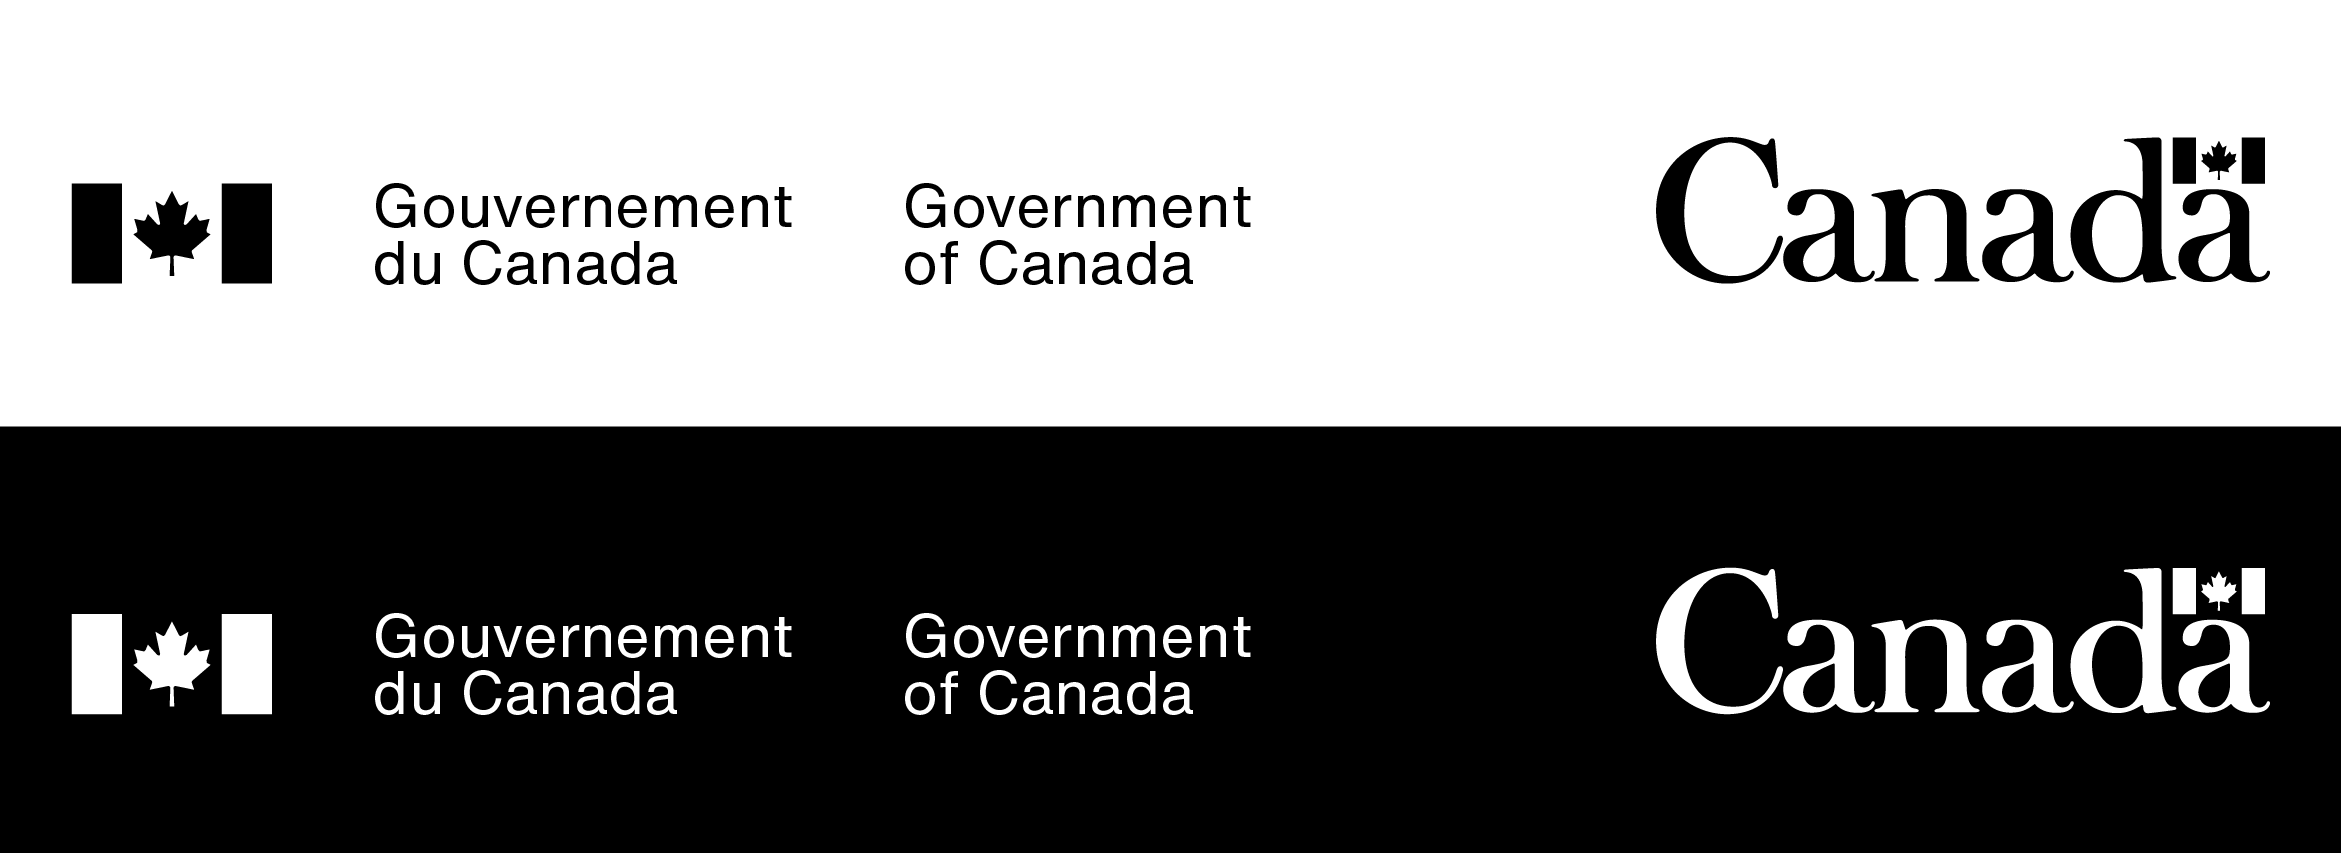 Signature du gouvernement du Canada (gauche) et mot-symbole « Canada » (droite), en lettres noires avec un symbole du drapeau noir sur fond blanc, et en lettres blanches avec un symbole du drapeau blanc sur fond noir.